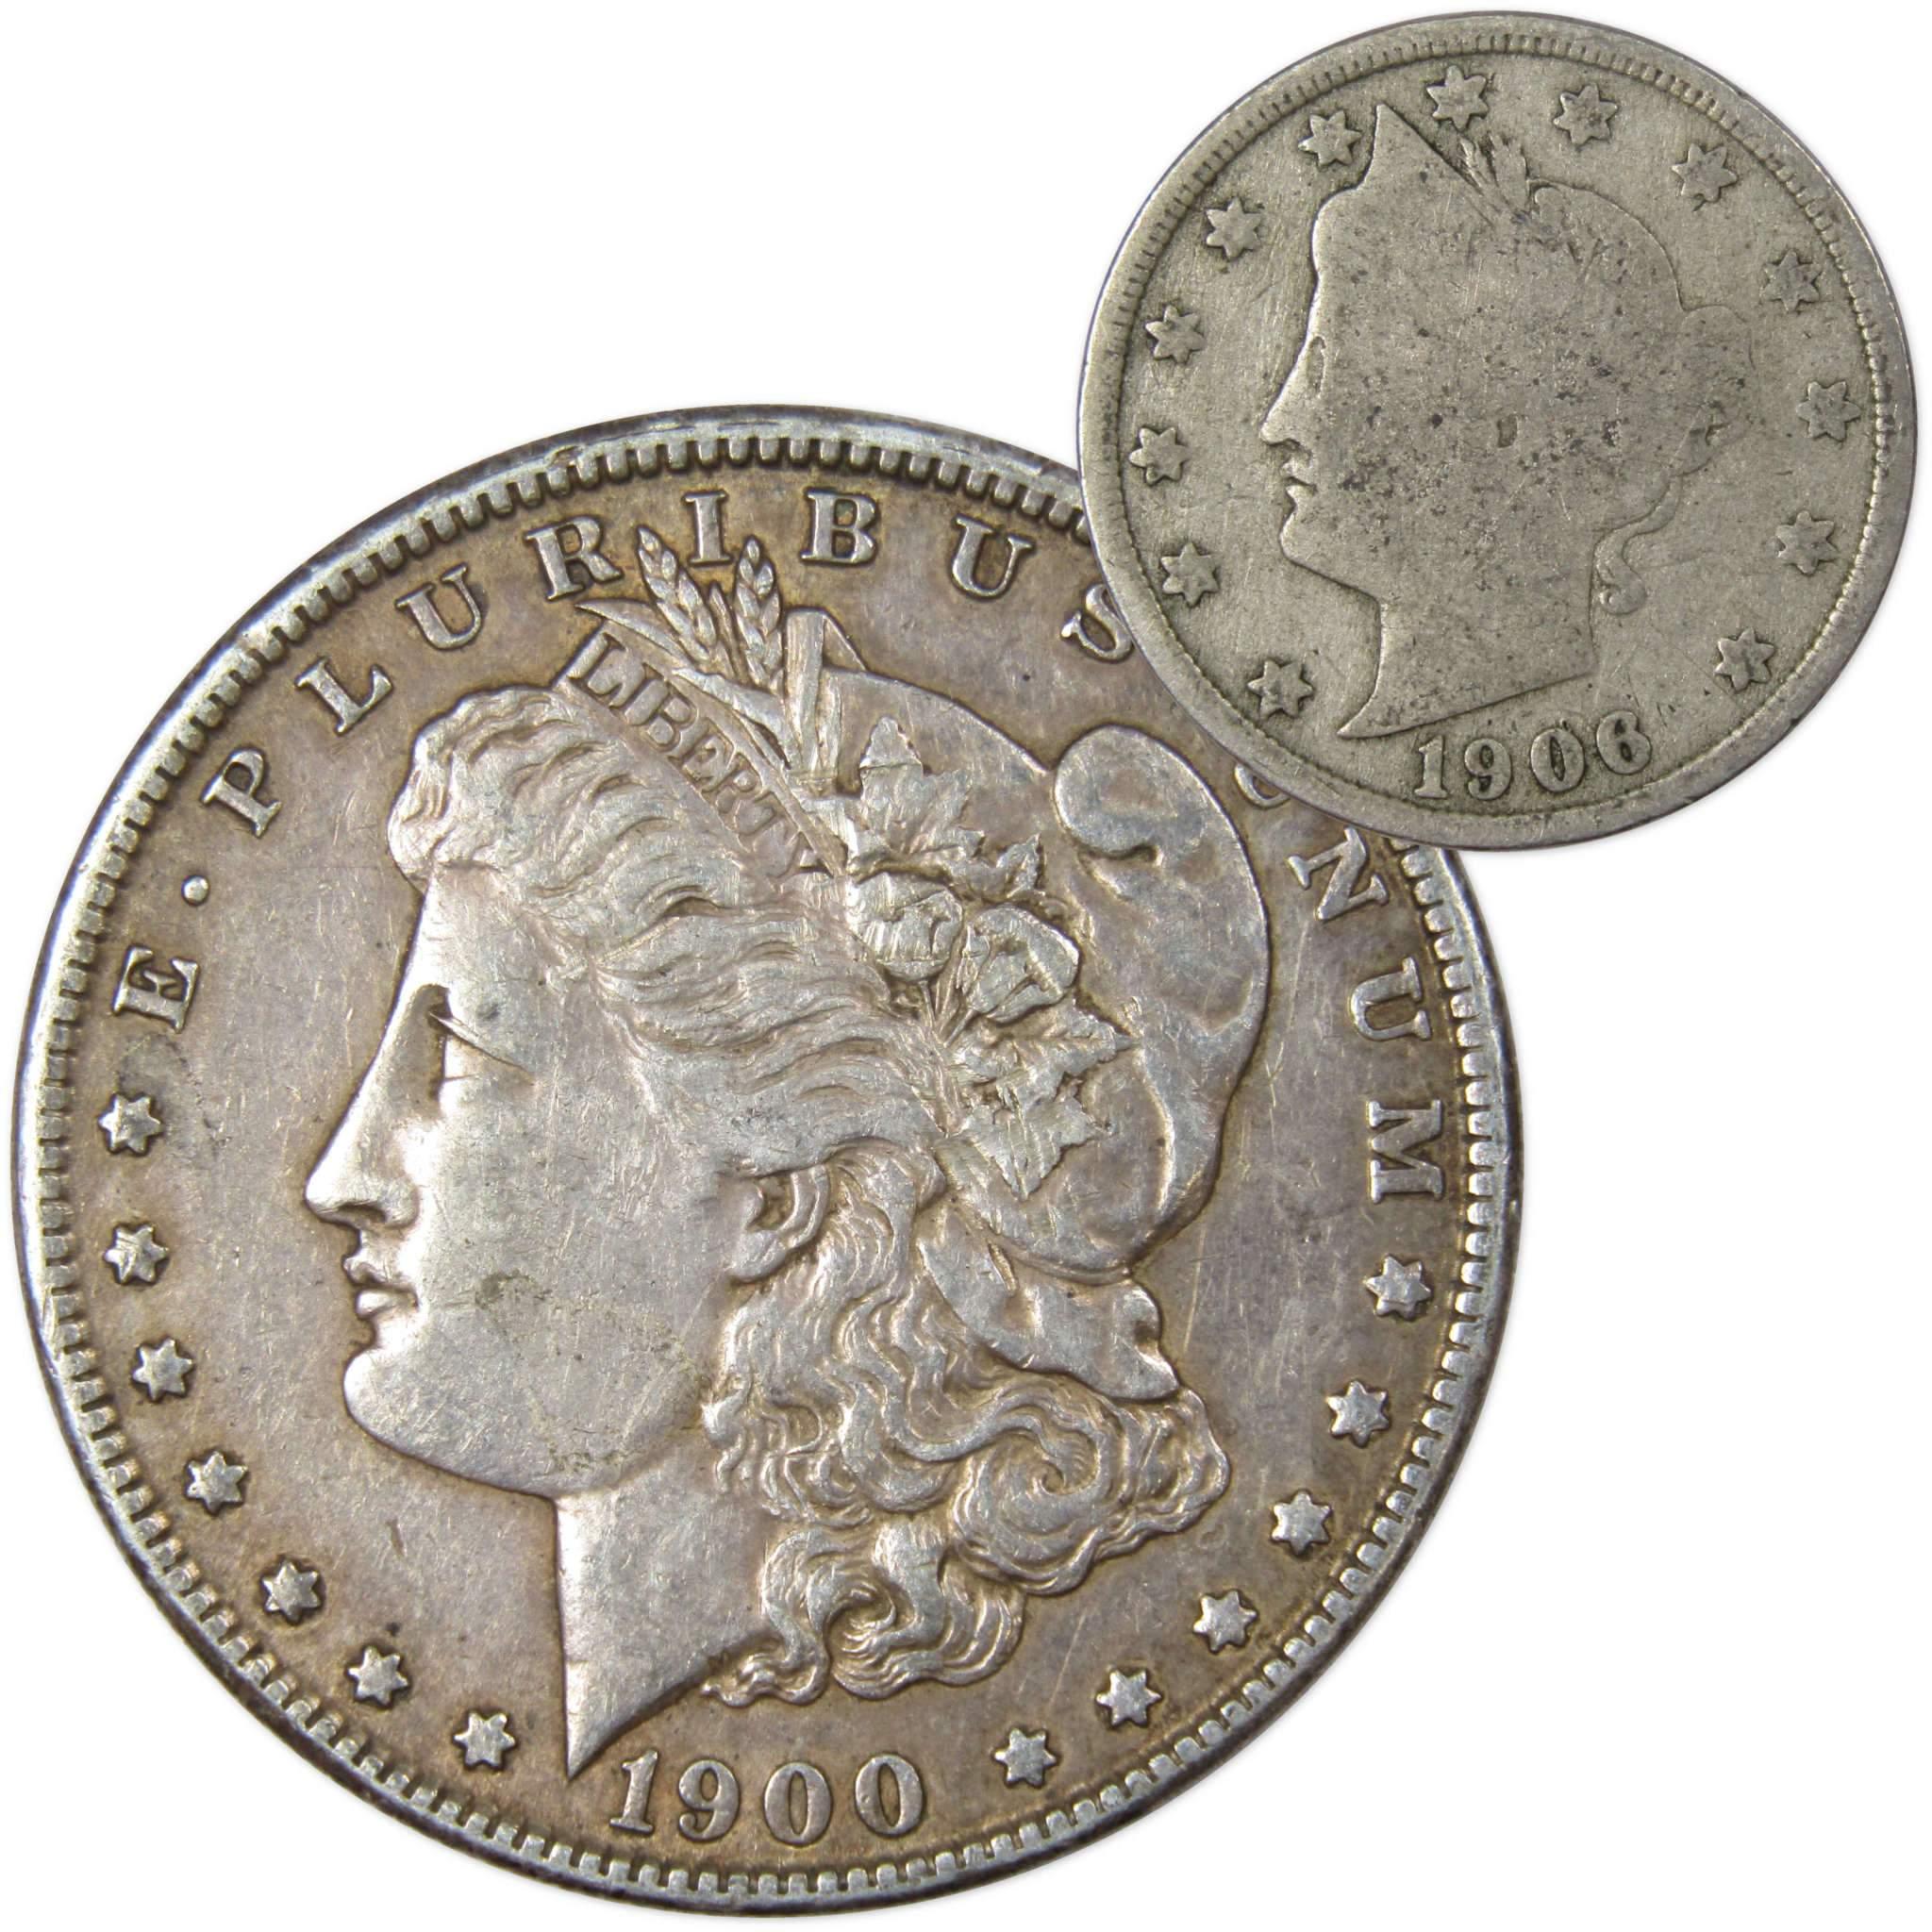 1900 O Morgan Dollar VF Very Fine 90% Silver with 1906 Liberty Nickel G Good - Morgan coin - Morgan silver dollar - Morgan silver dollar for sale - Profile Coins &amp; Collectibles